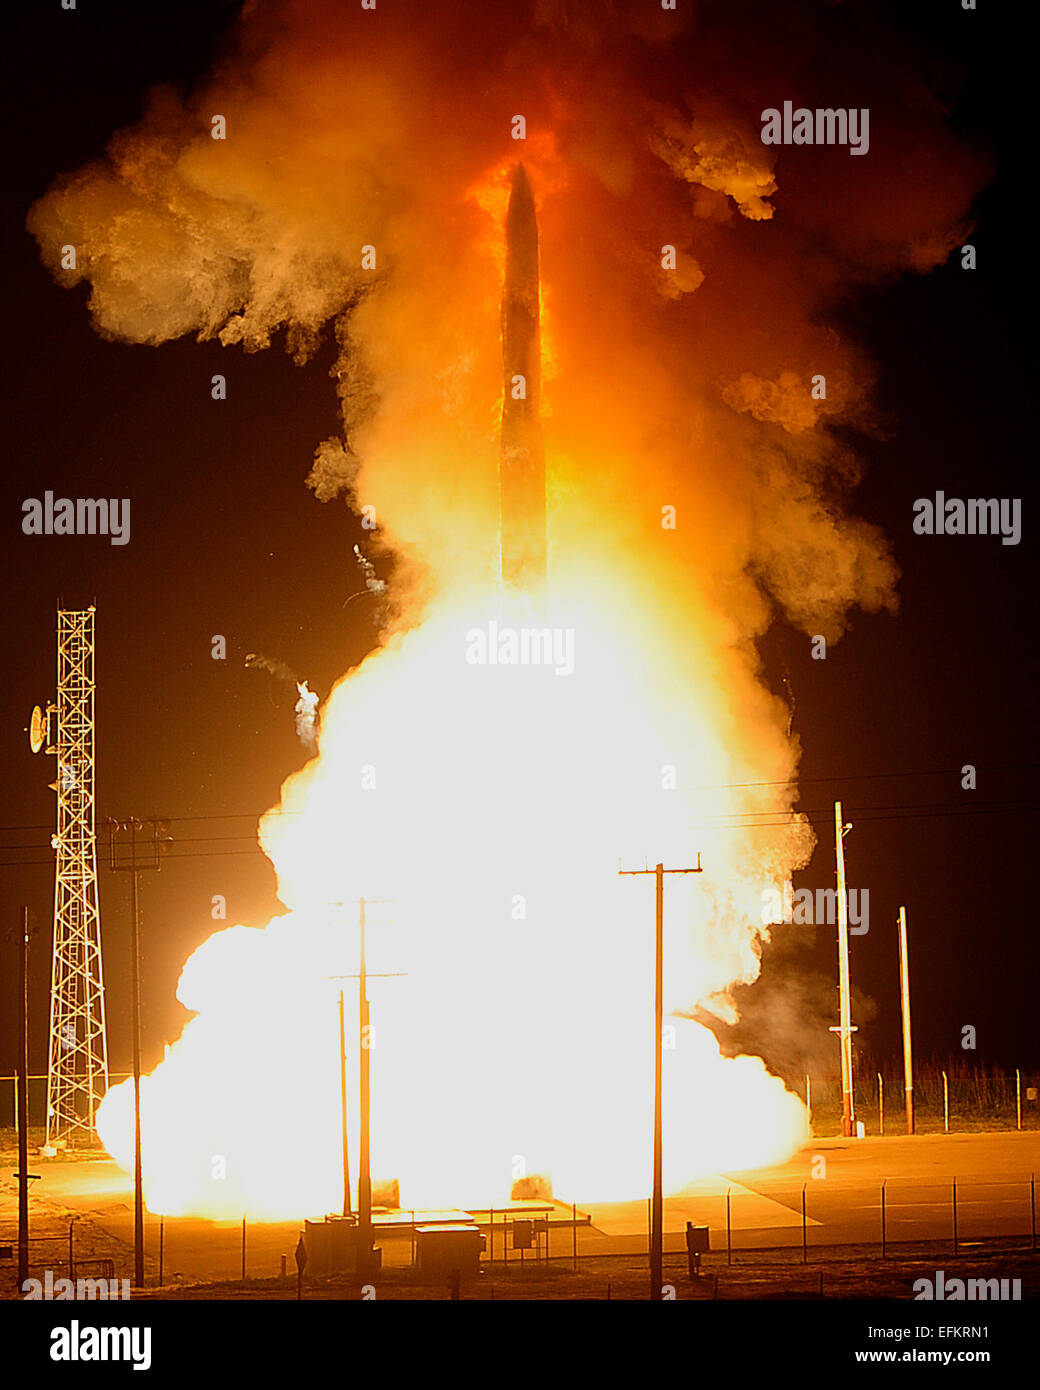 Une armée de l'air des LGM-30G Minuteman III de missiles nucléaires balistiques intercontinentaux est lancé au cours d'un essai de fonctionnement à Vandenberg Air Force Base, 25 février 2013 à Vandenberg, en Californie. Banque D'Images